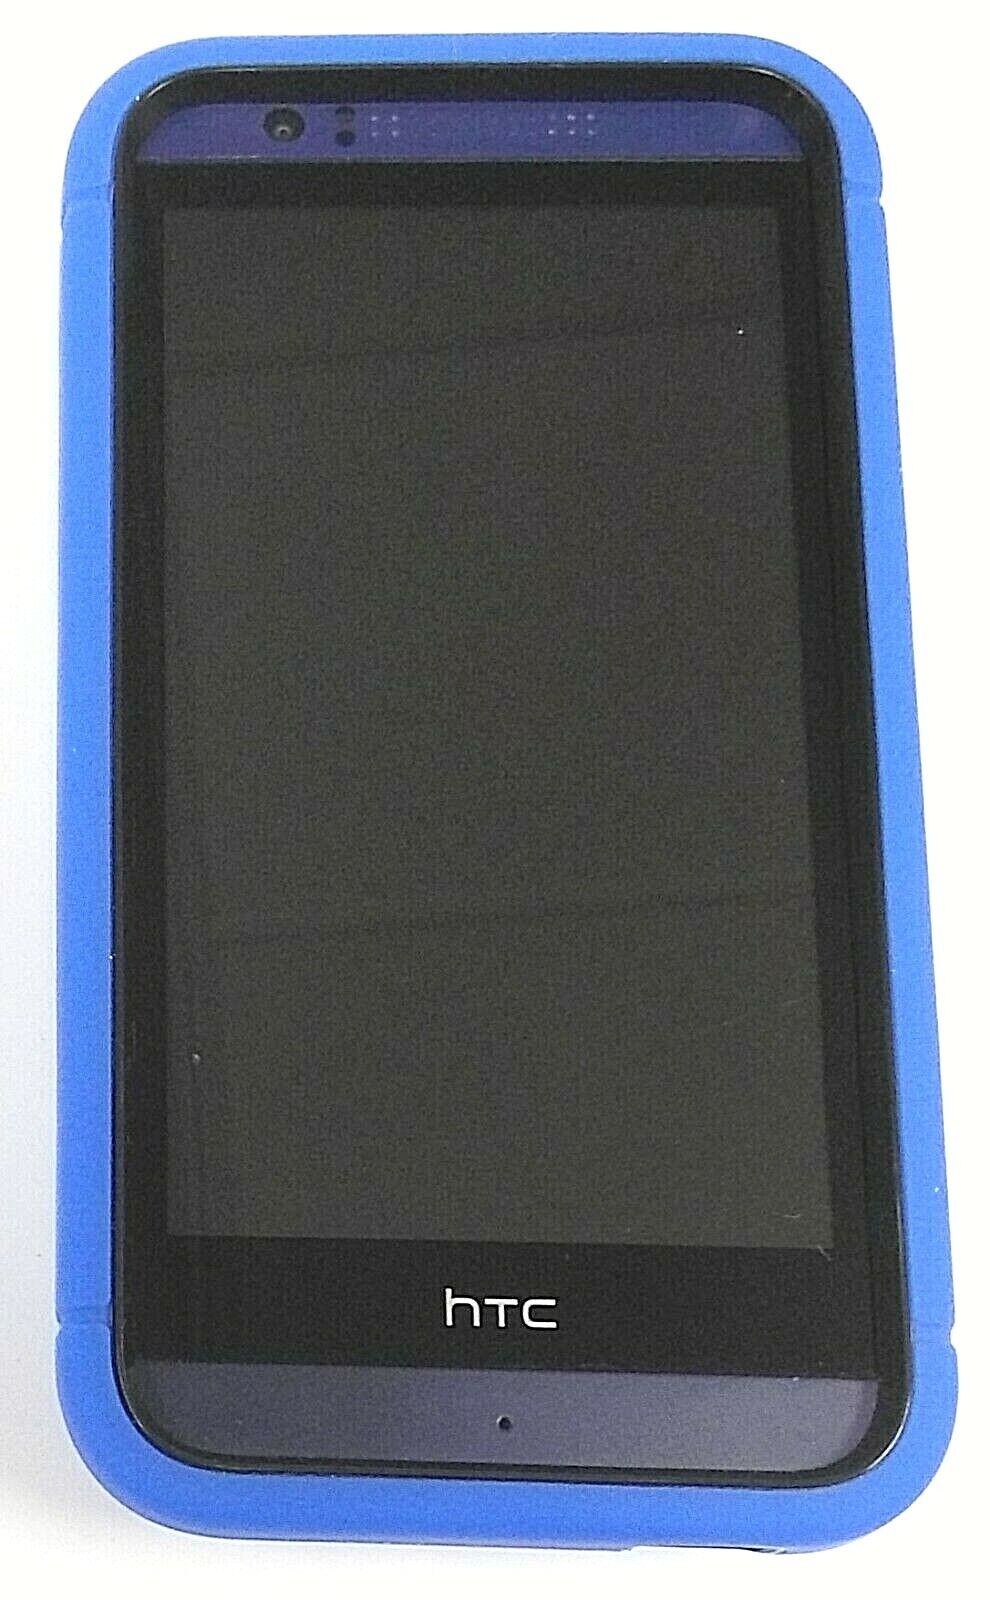 HTC Desire 510 - Deep Navy Blue ( Sprint ) Android Smartphone - Bundled HTC HTC Desire 510 - фотография #4